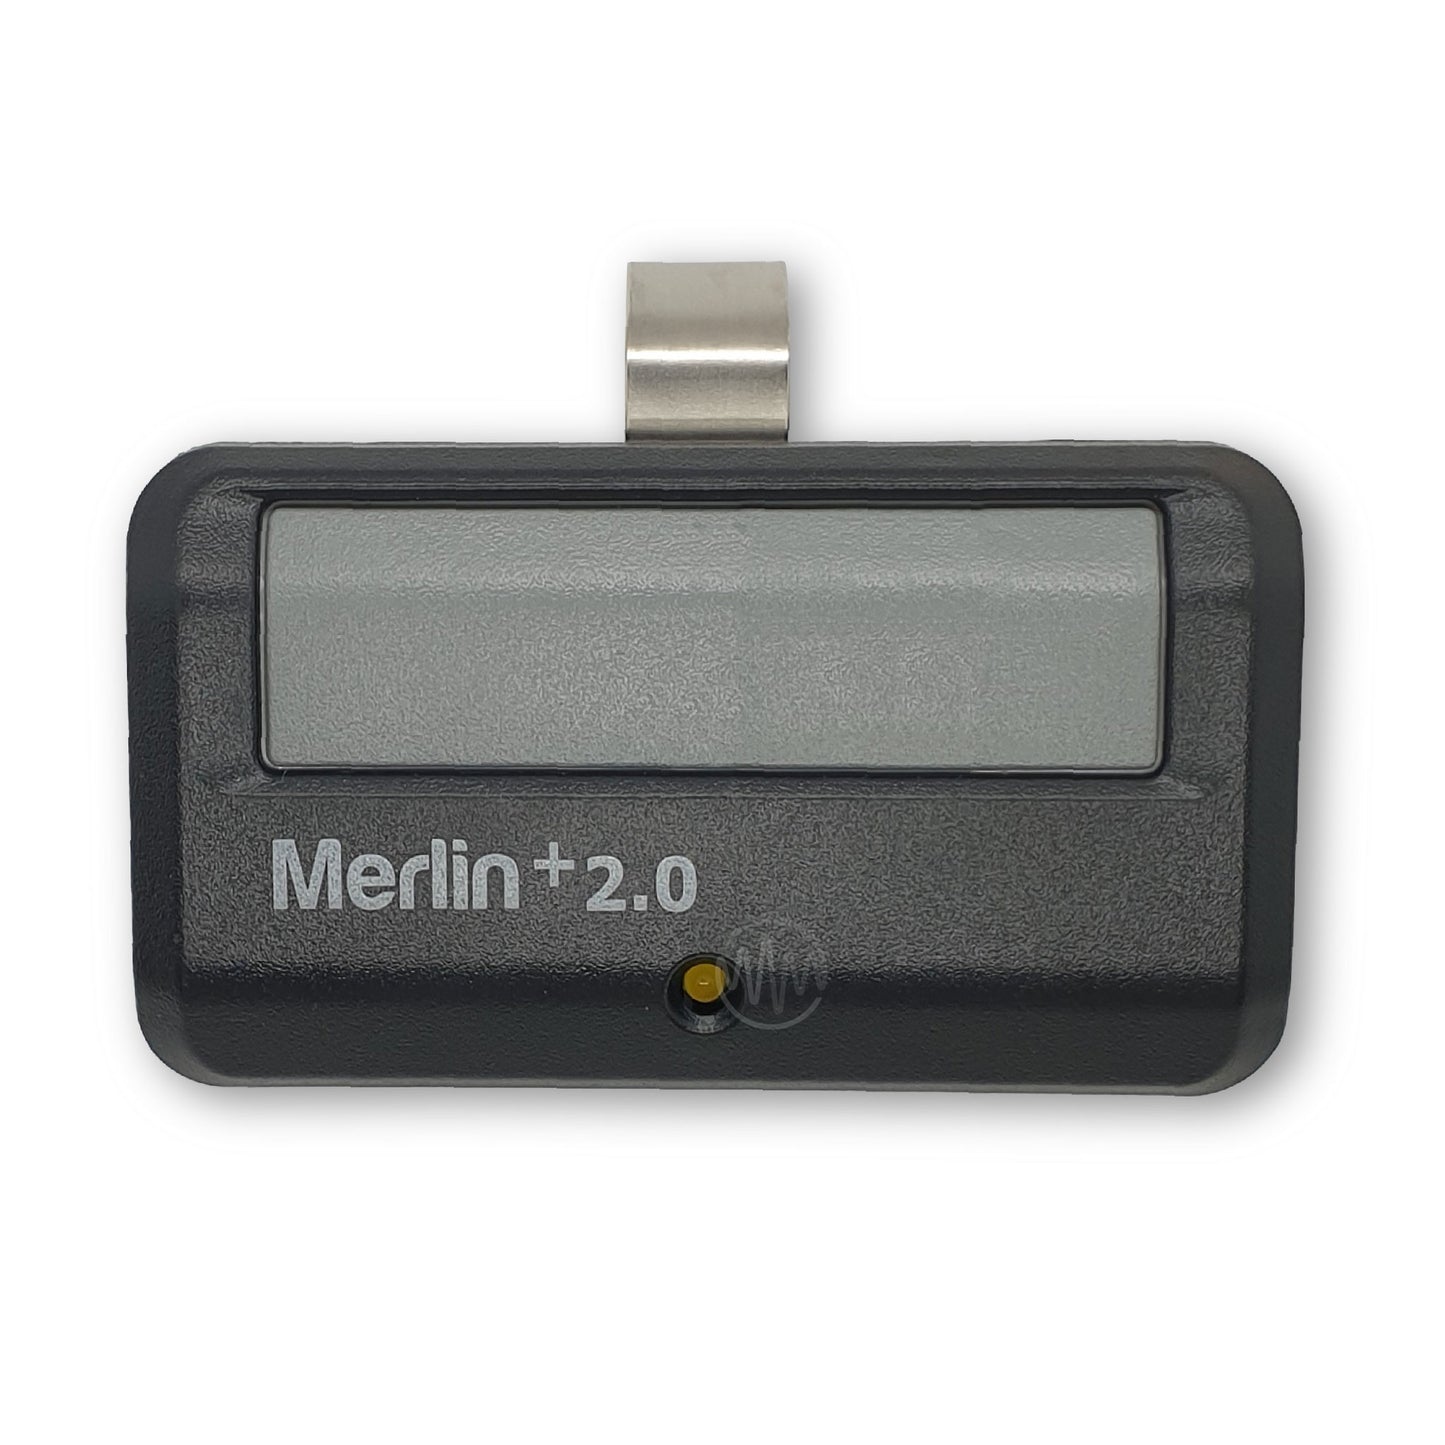 Merlin +2.0 E940M Garage Remote